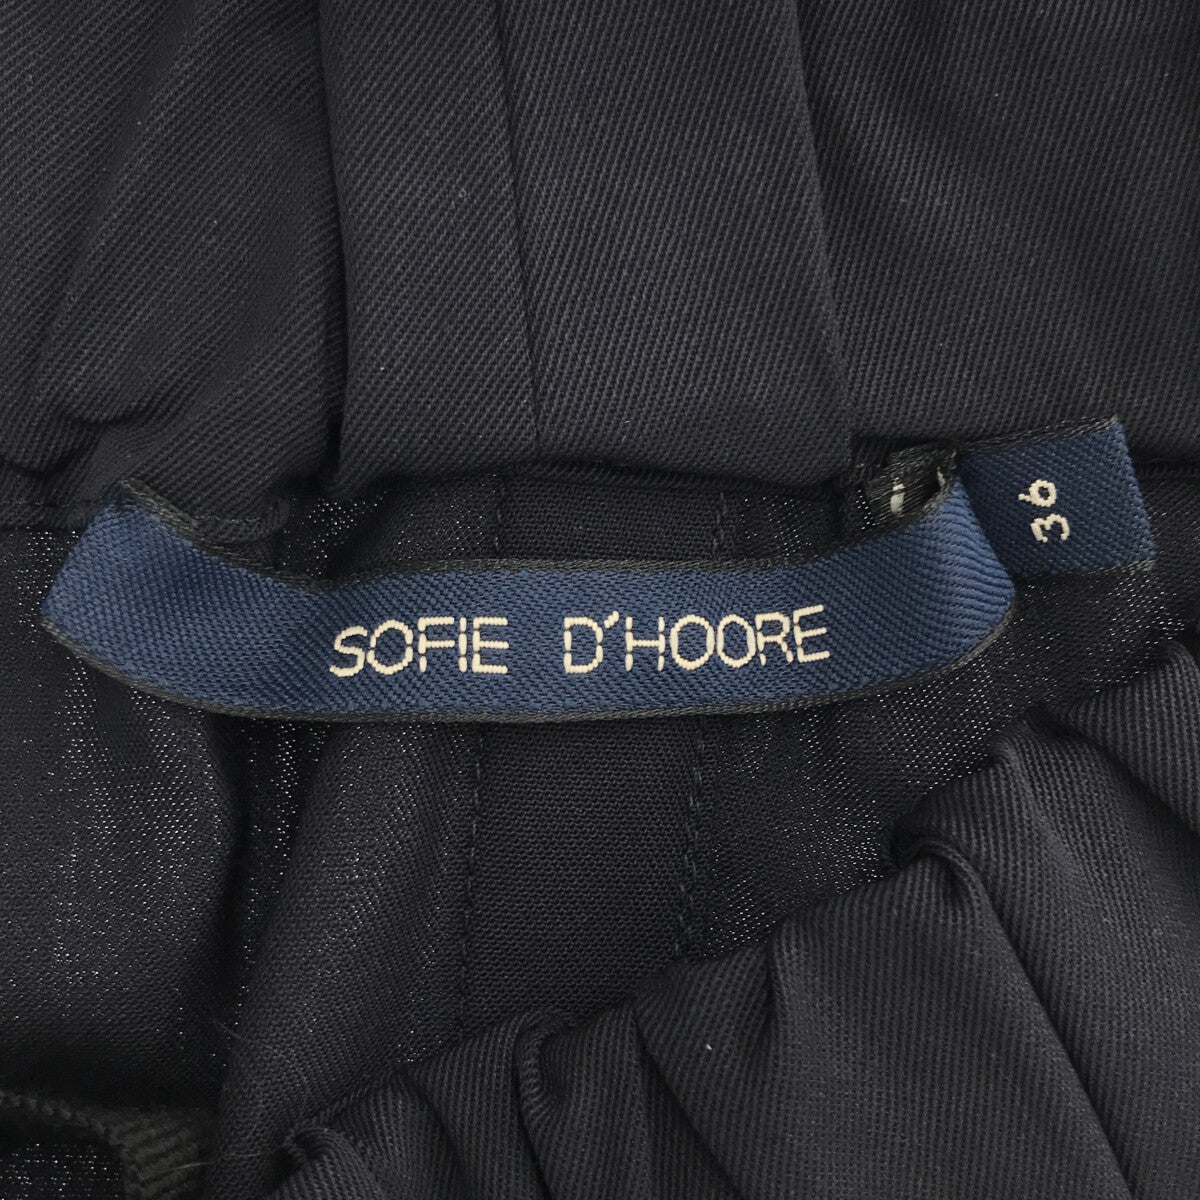 SOFIE D'HOORE / ソフィードール | ウール ビッグポケット バックスリット イージースカート | 36 | レディース